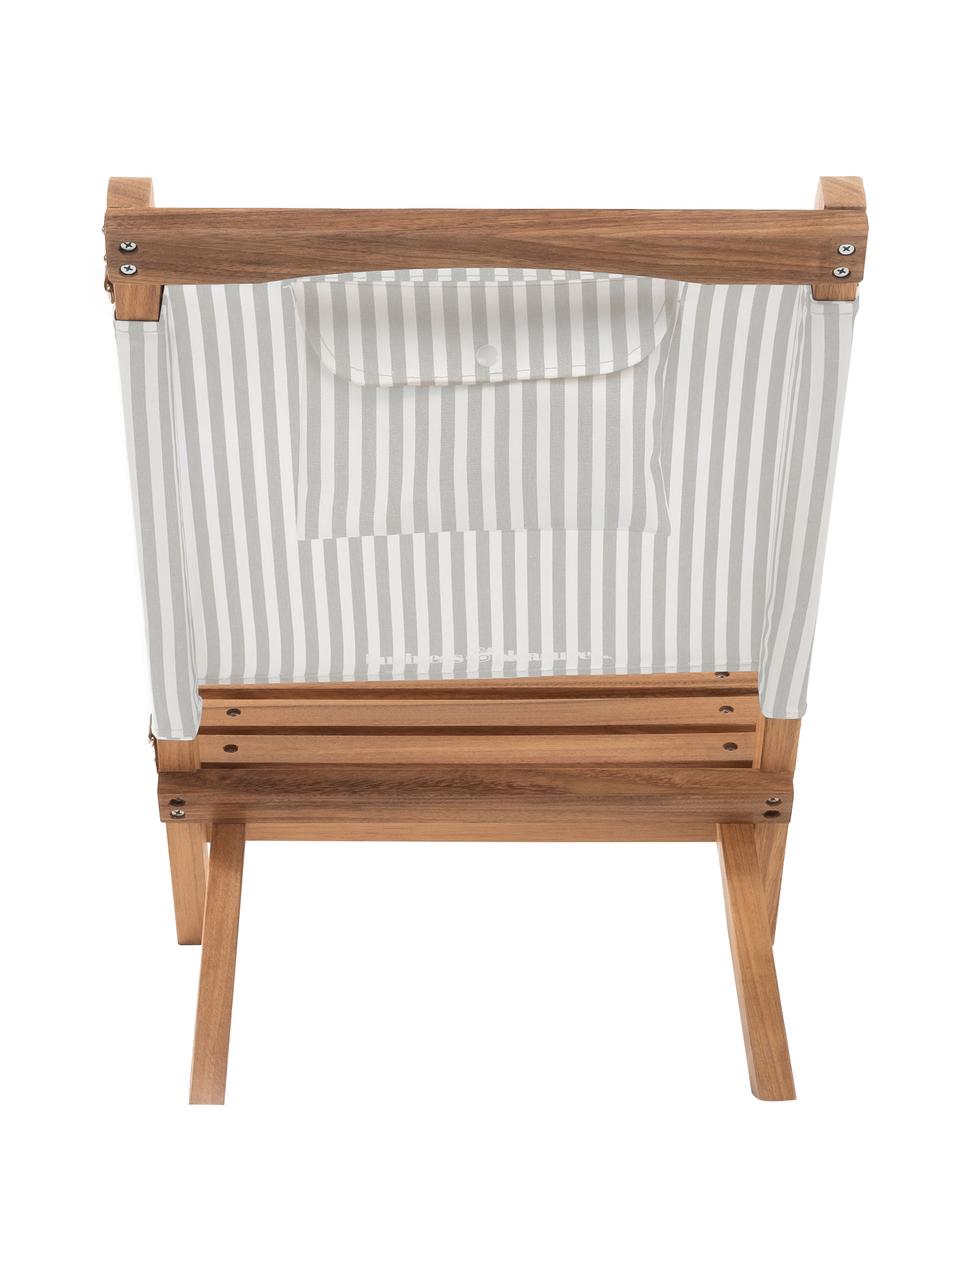 Skladacia stolička Lauren´s, Šalviová, biela, hnedá, Š 41 x V 58 cm